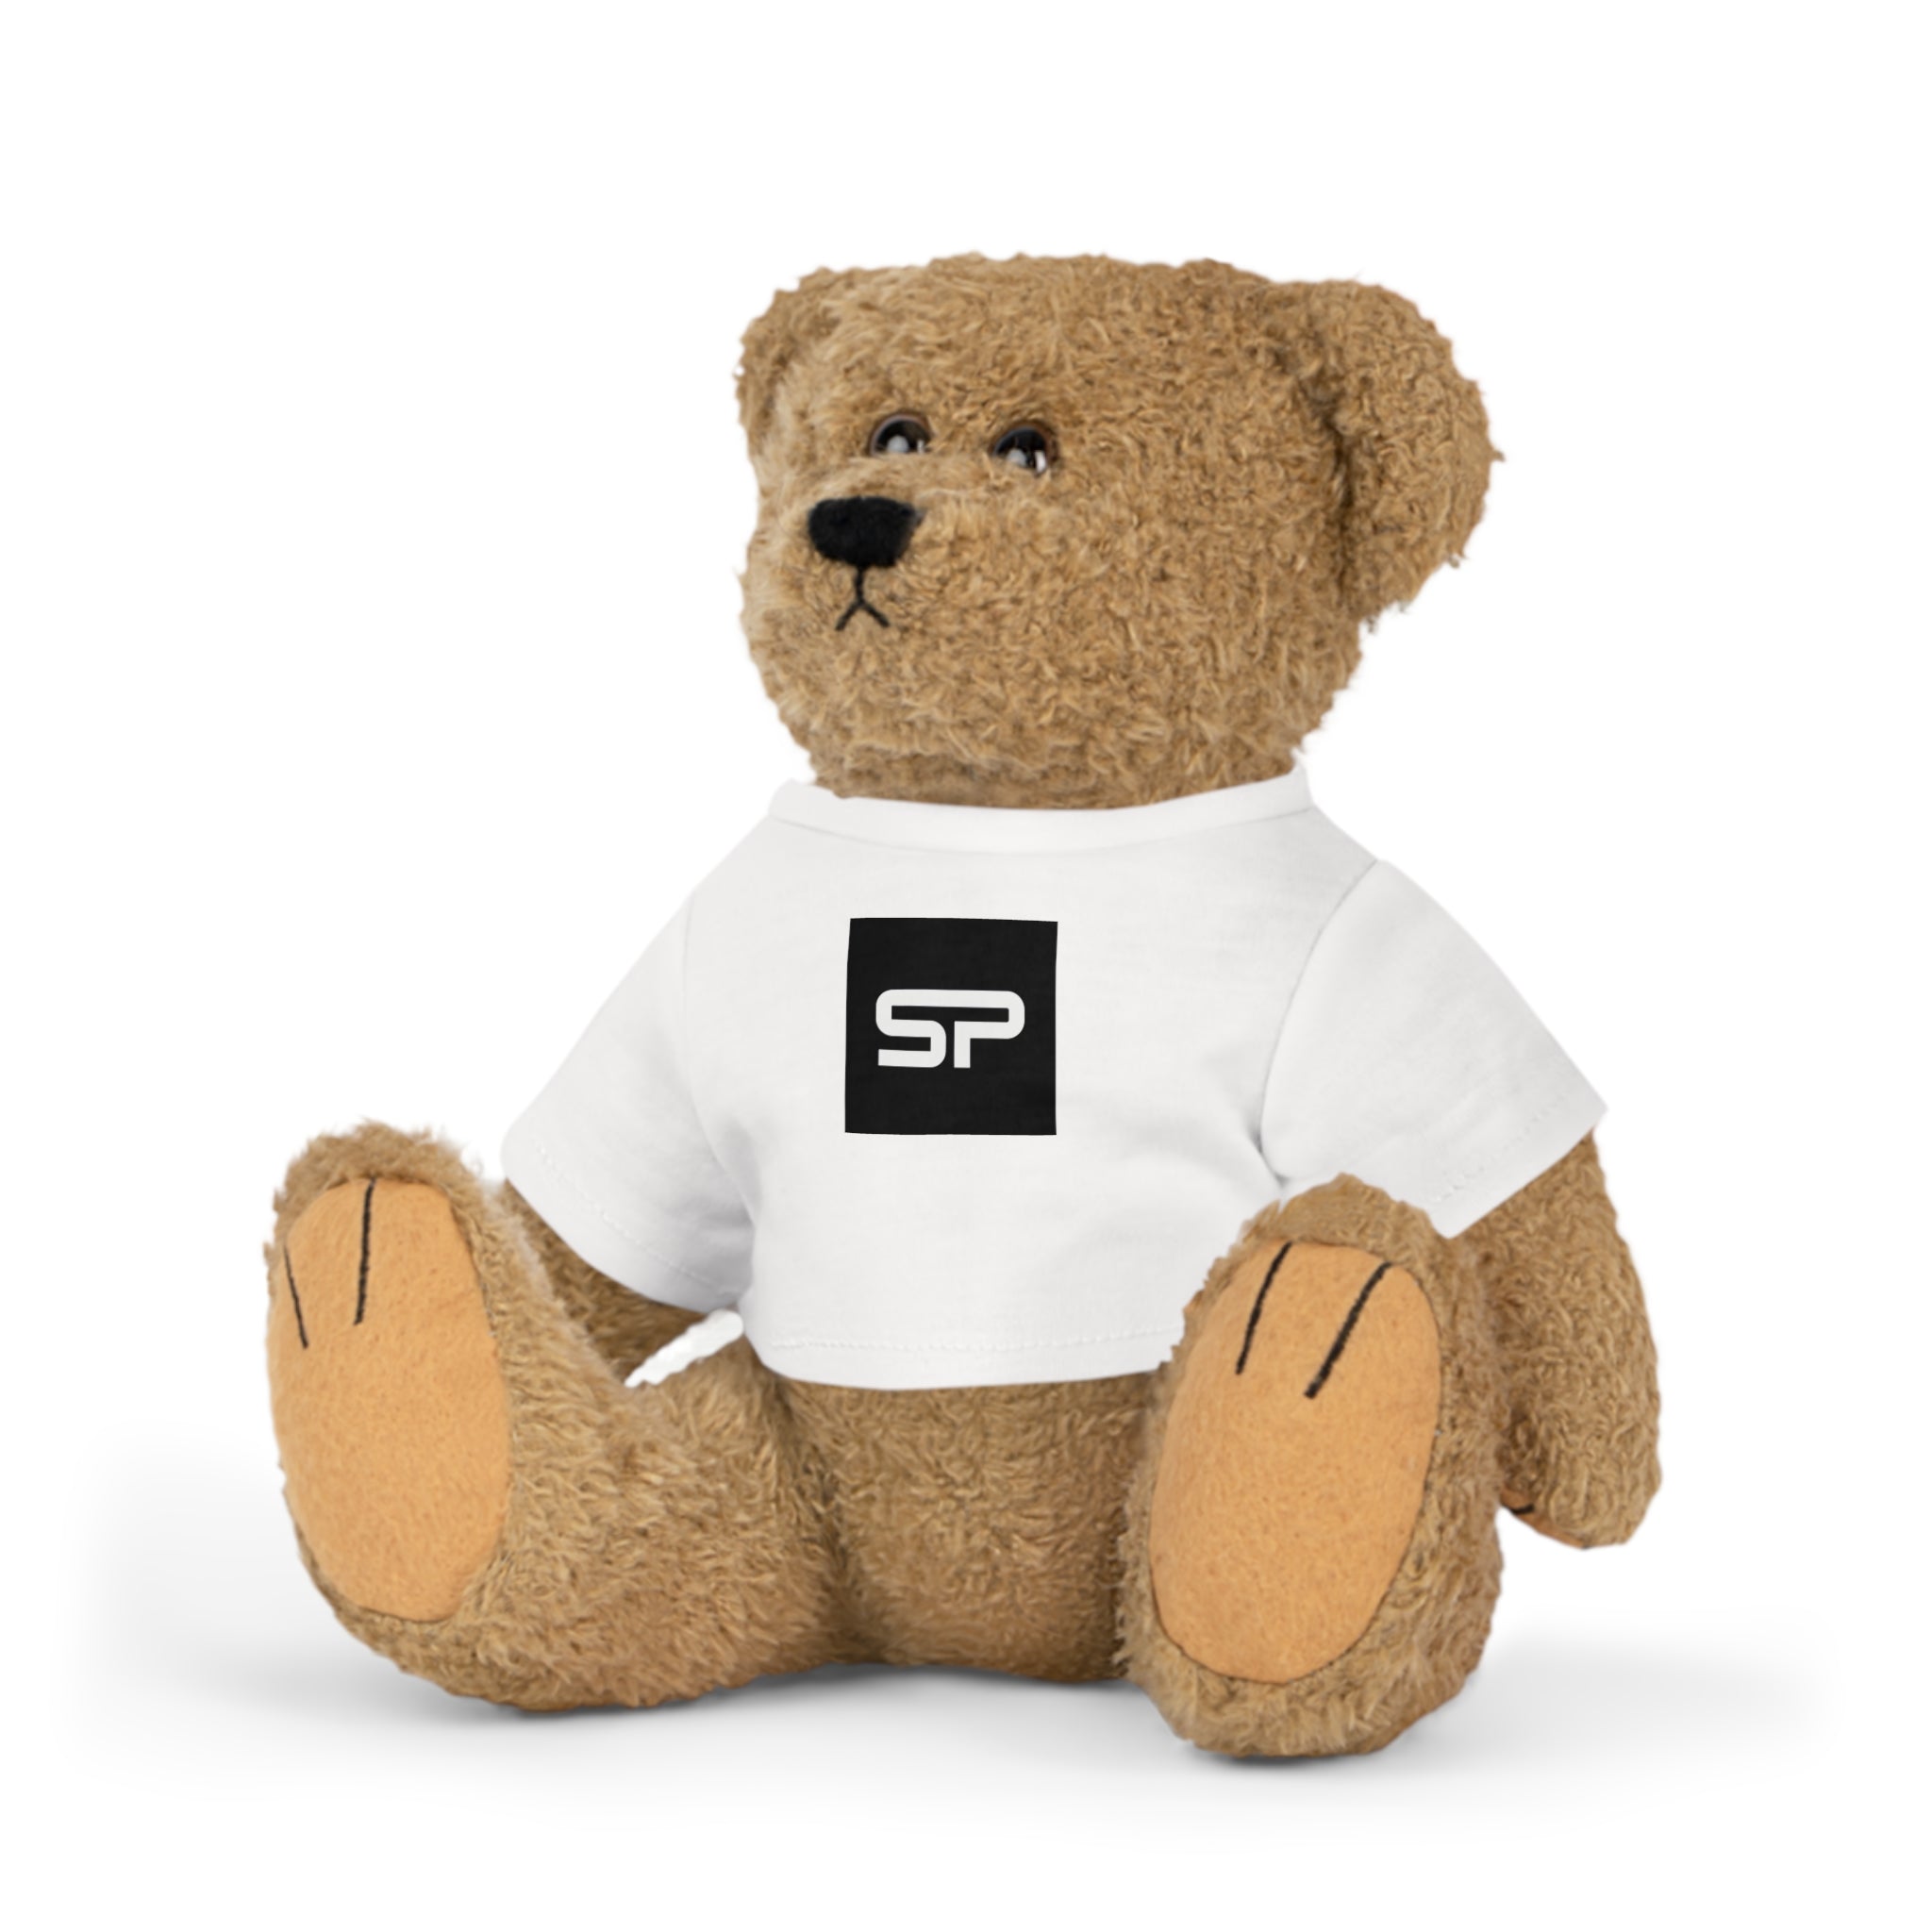 SP Teddy Bear